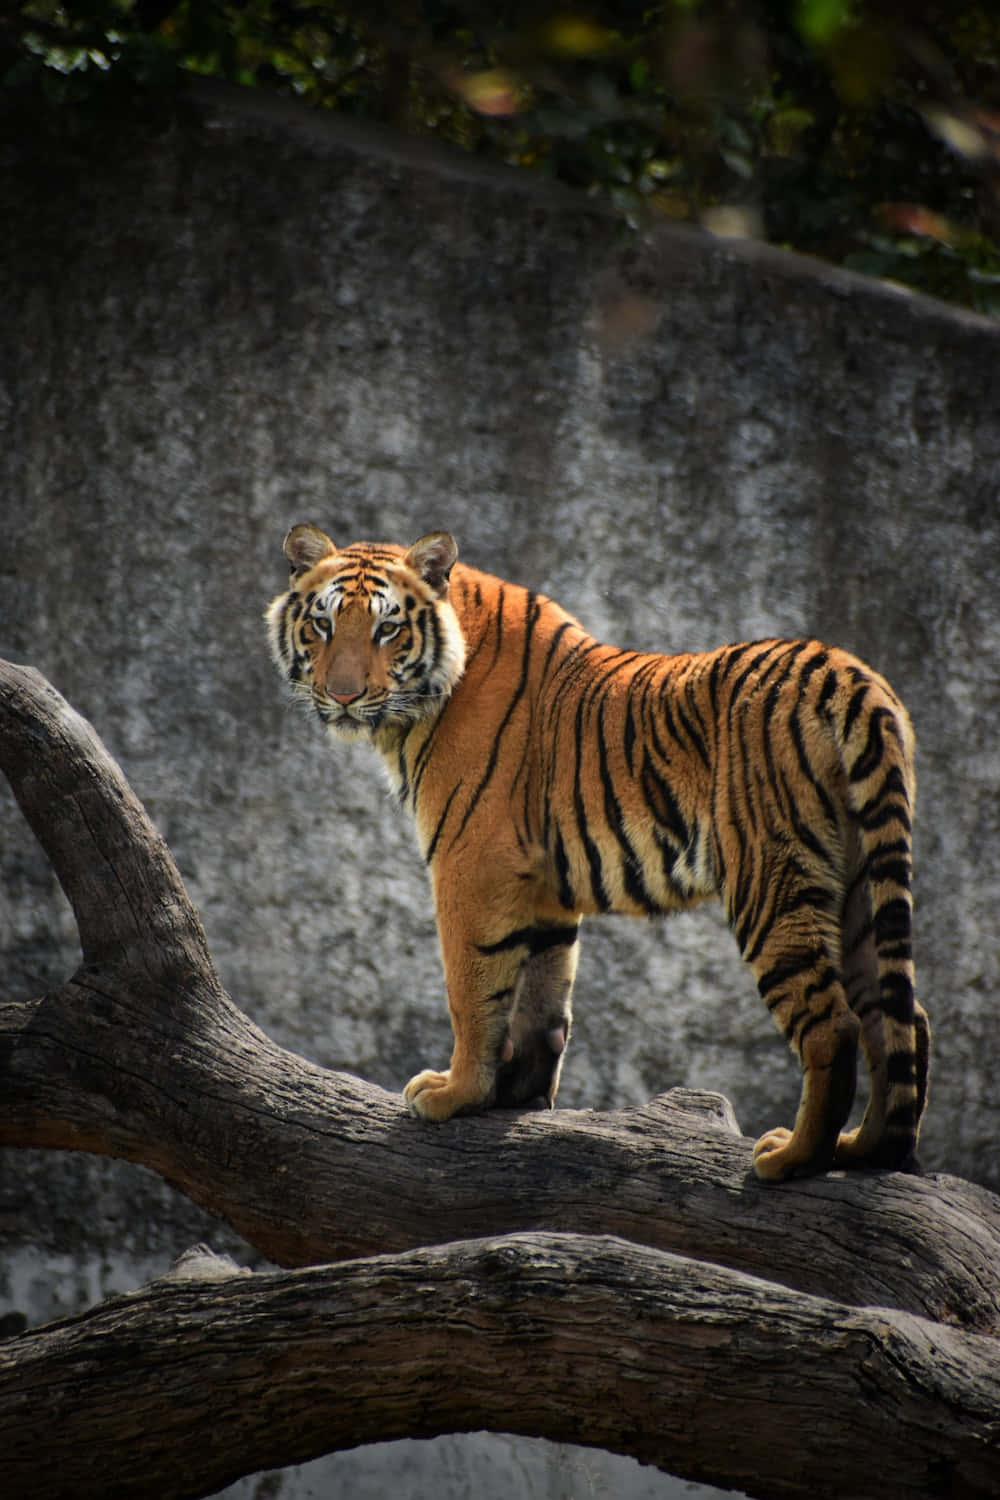 A Bengal Tiger in its Natural Habitat